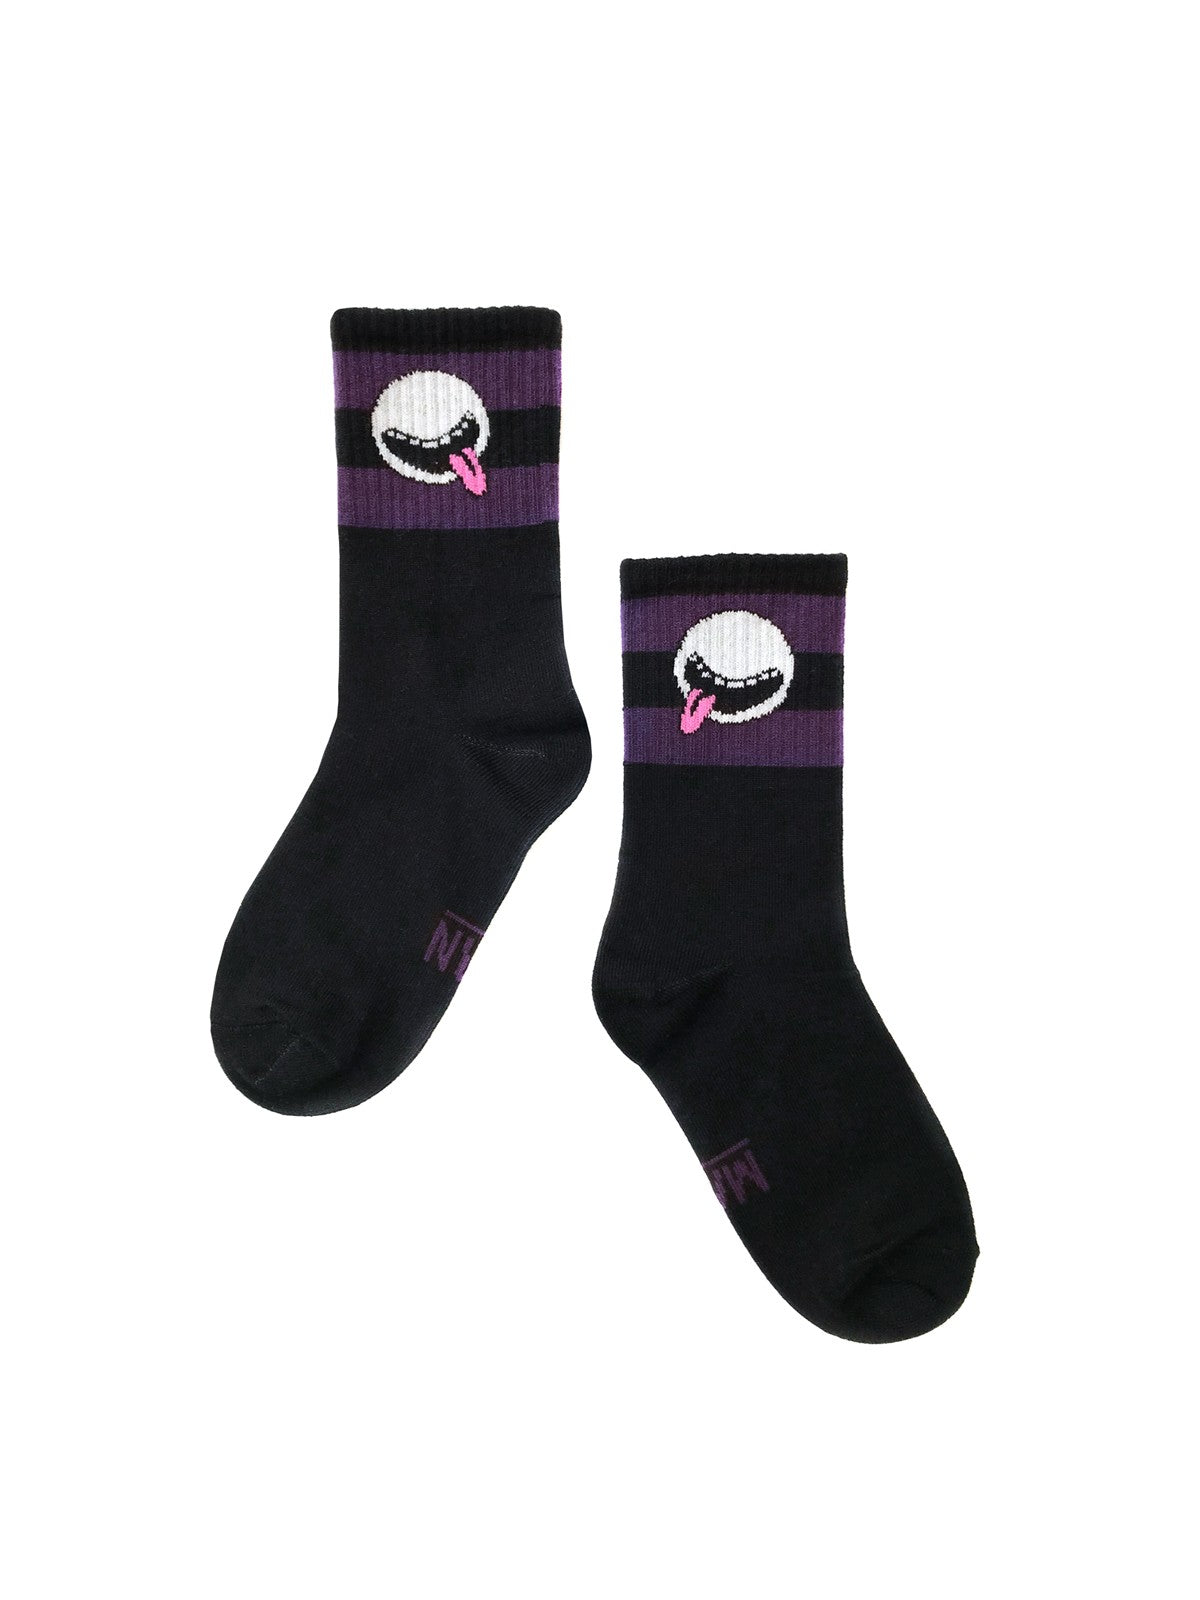 COSMIC CUTIE Socks